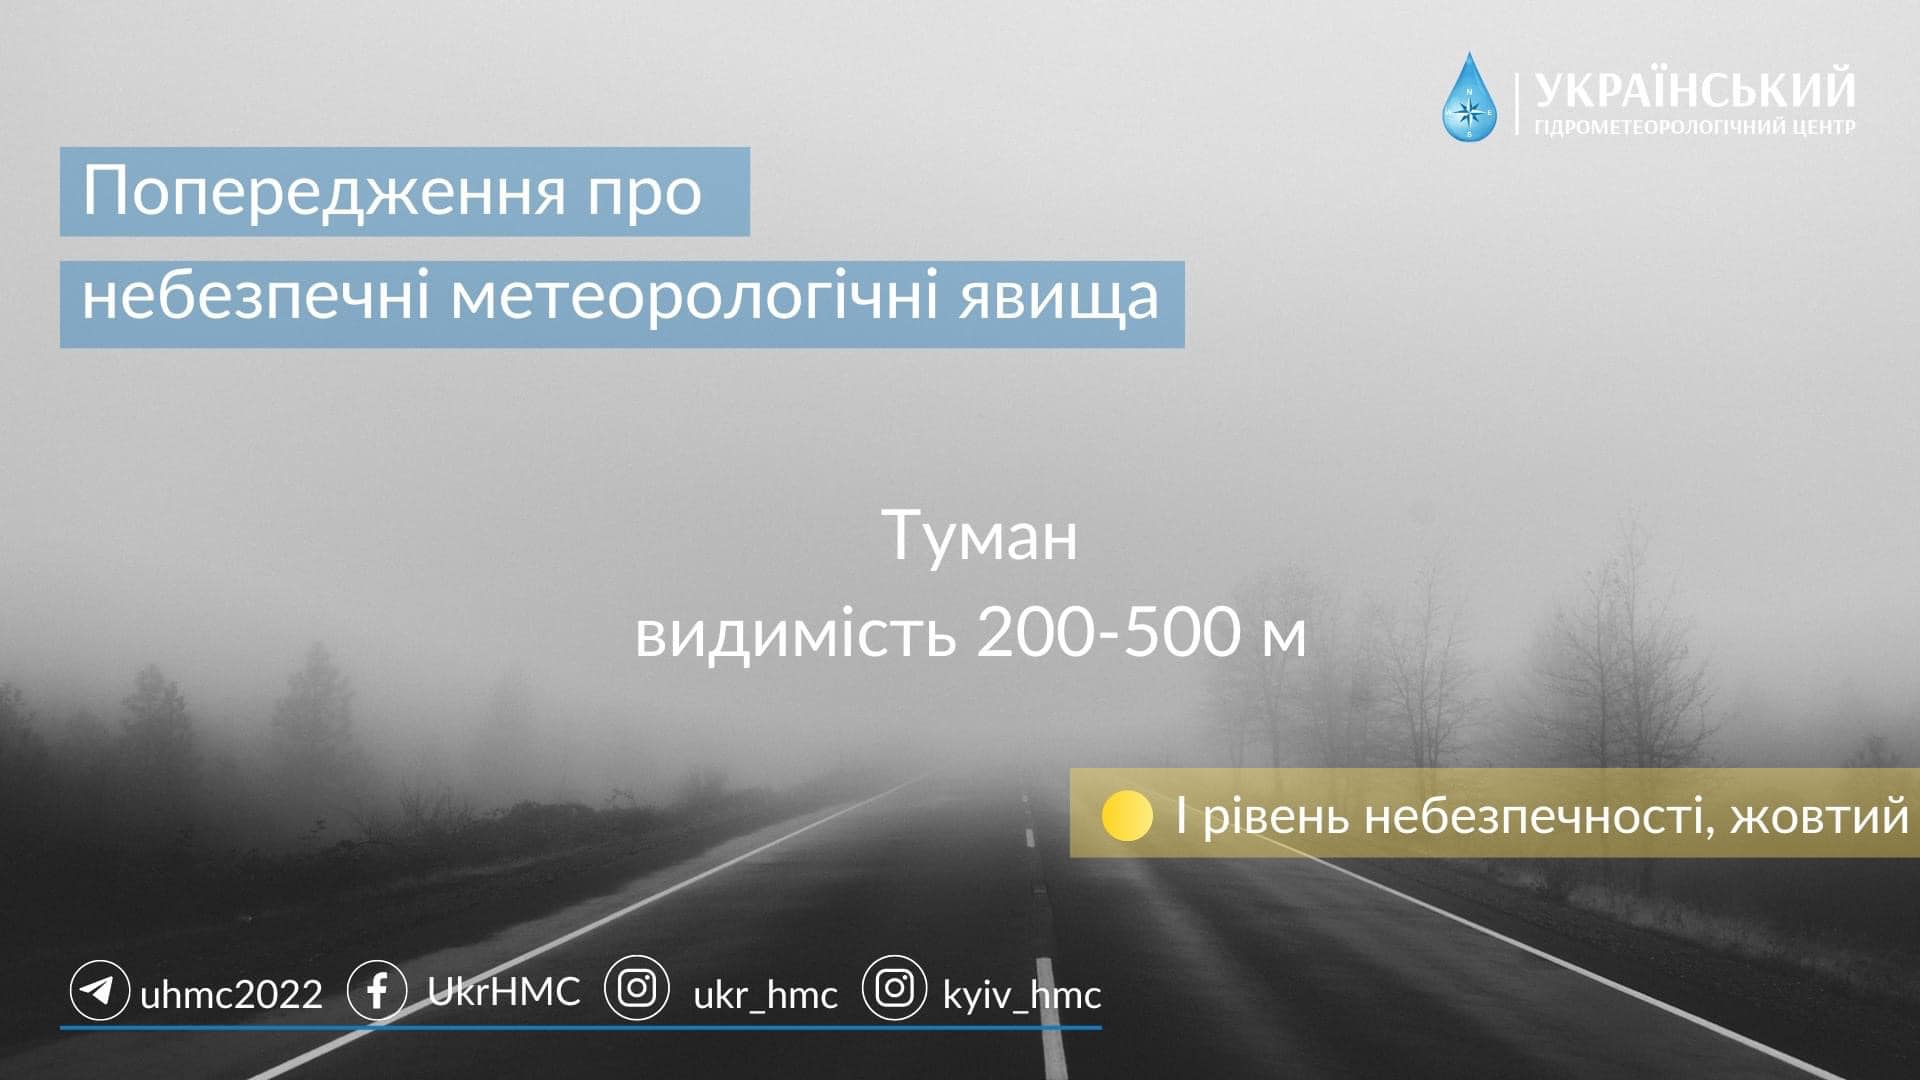 Харьковщину вновь накроет туман. Укргидрометцентр предупреждает об опасности